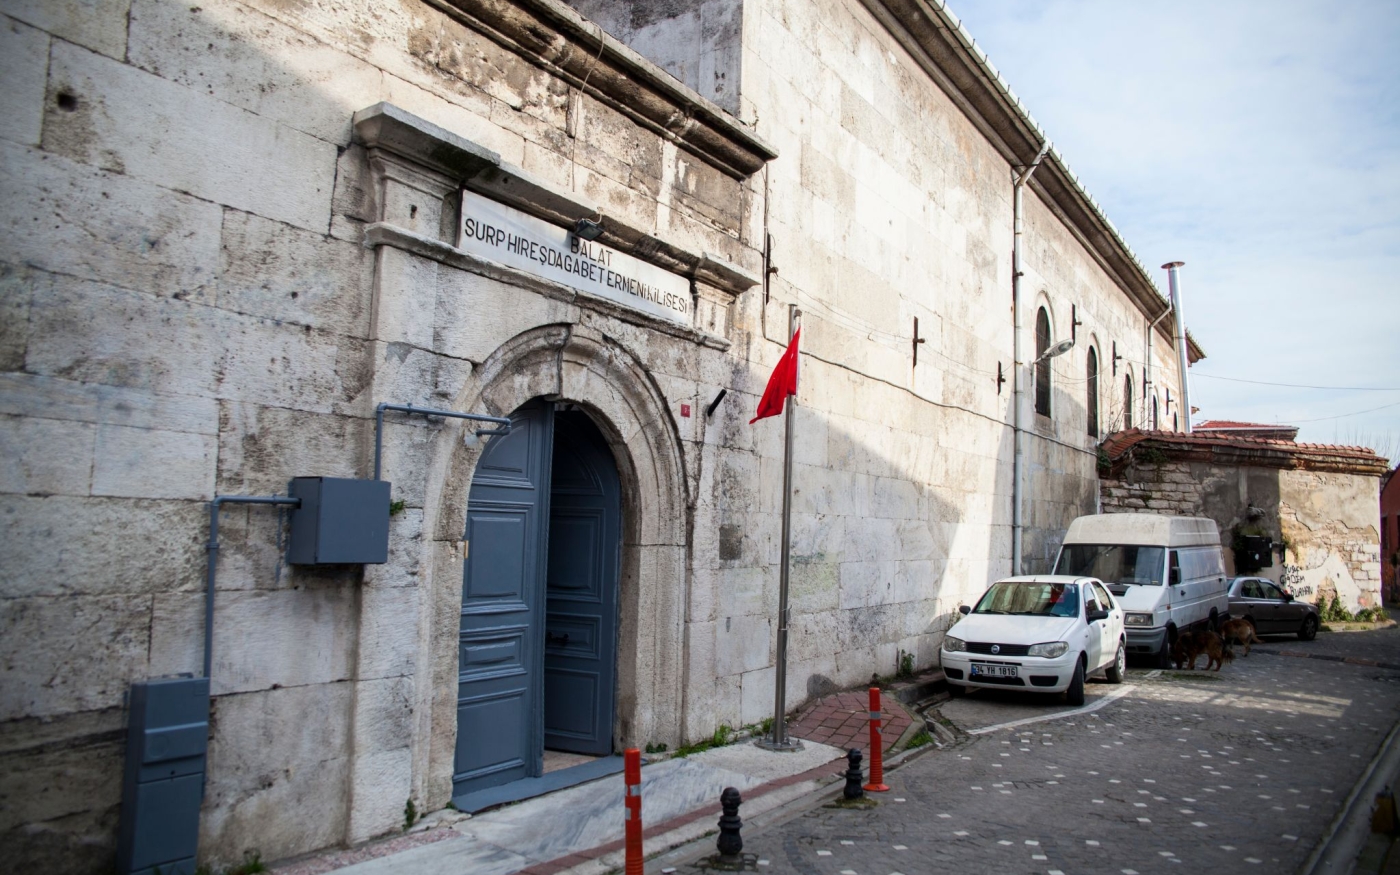 Considérée comme une « église de guérison », l’église Surp Hresdagabet était importante pour les communautés grecque et arménienne d’Istanbul (MEE/Tessa Fox)